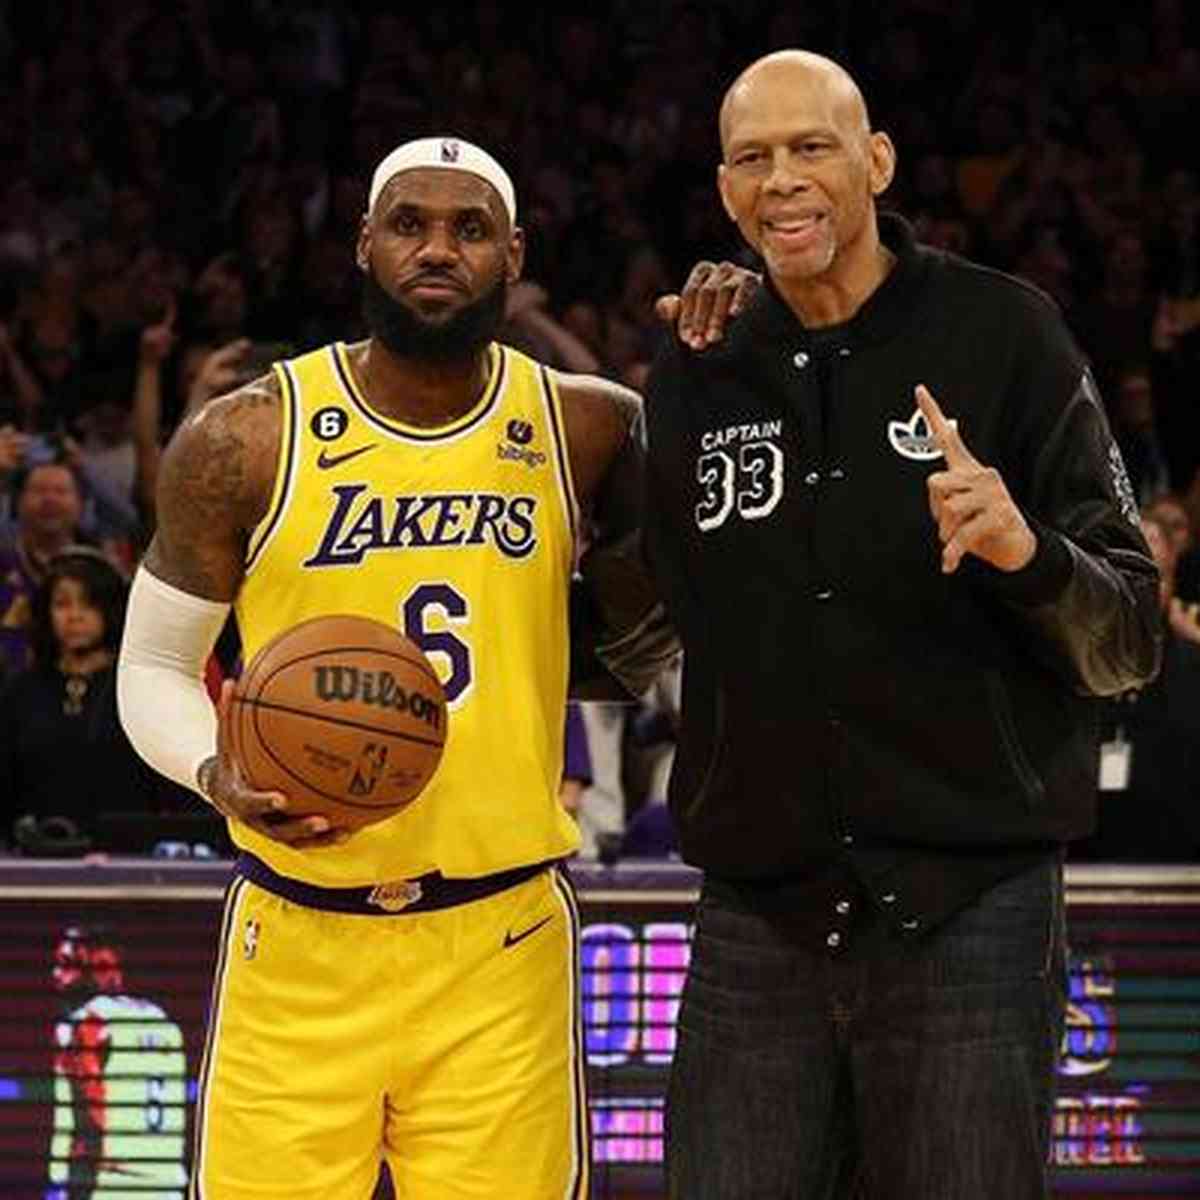 Bola de Basquete Los Angeles Lakers Lebron James 6 Wilson NBA em Promoção